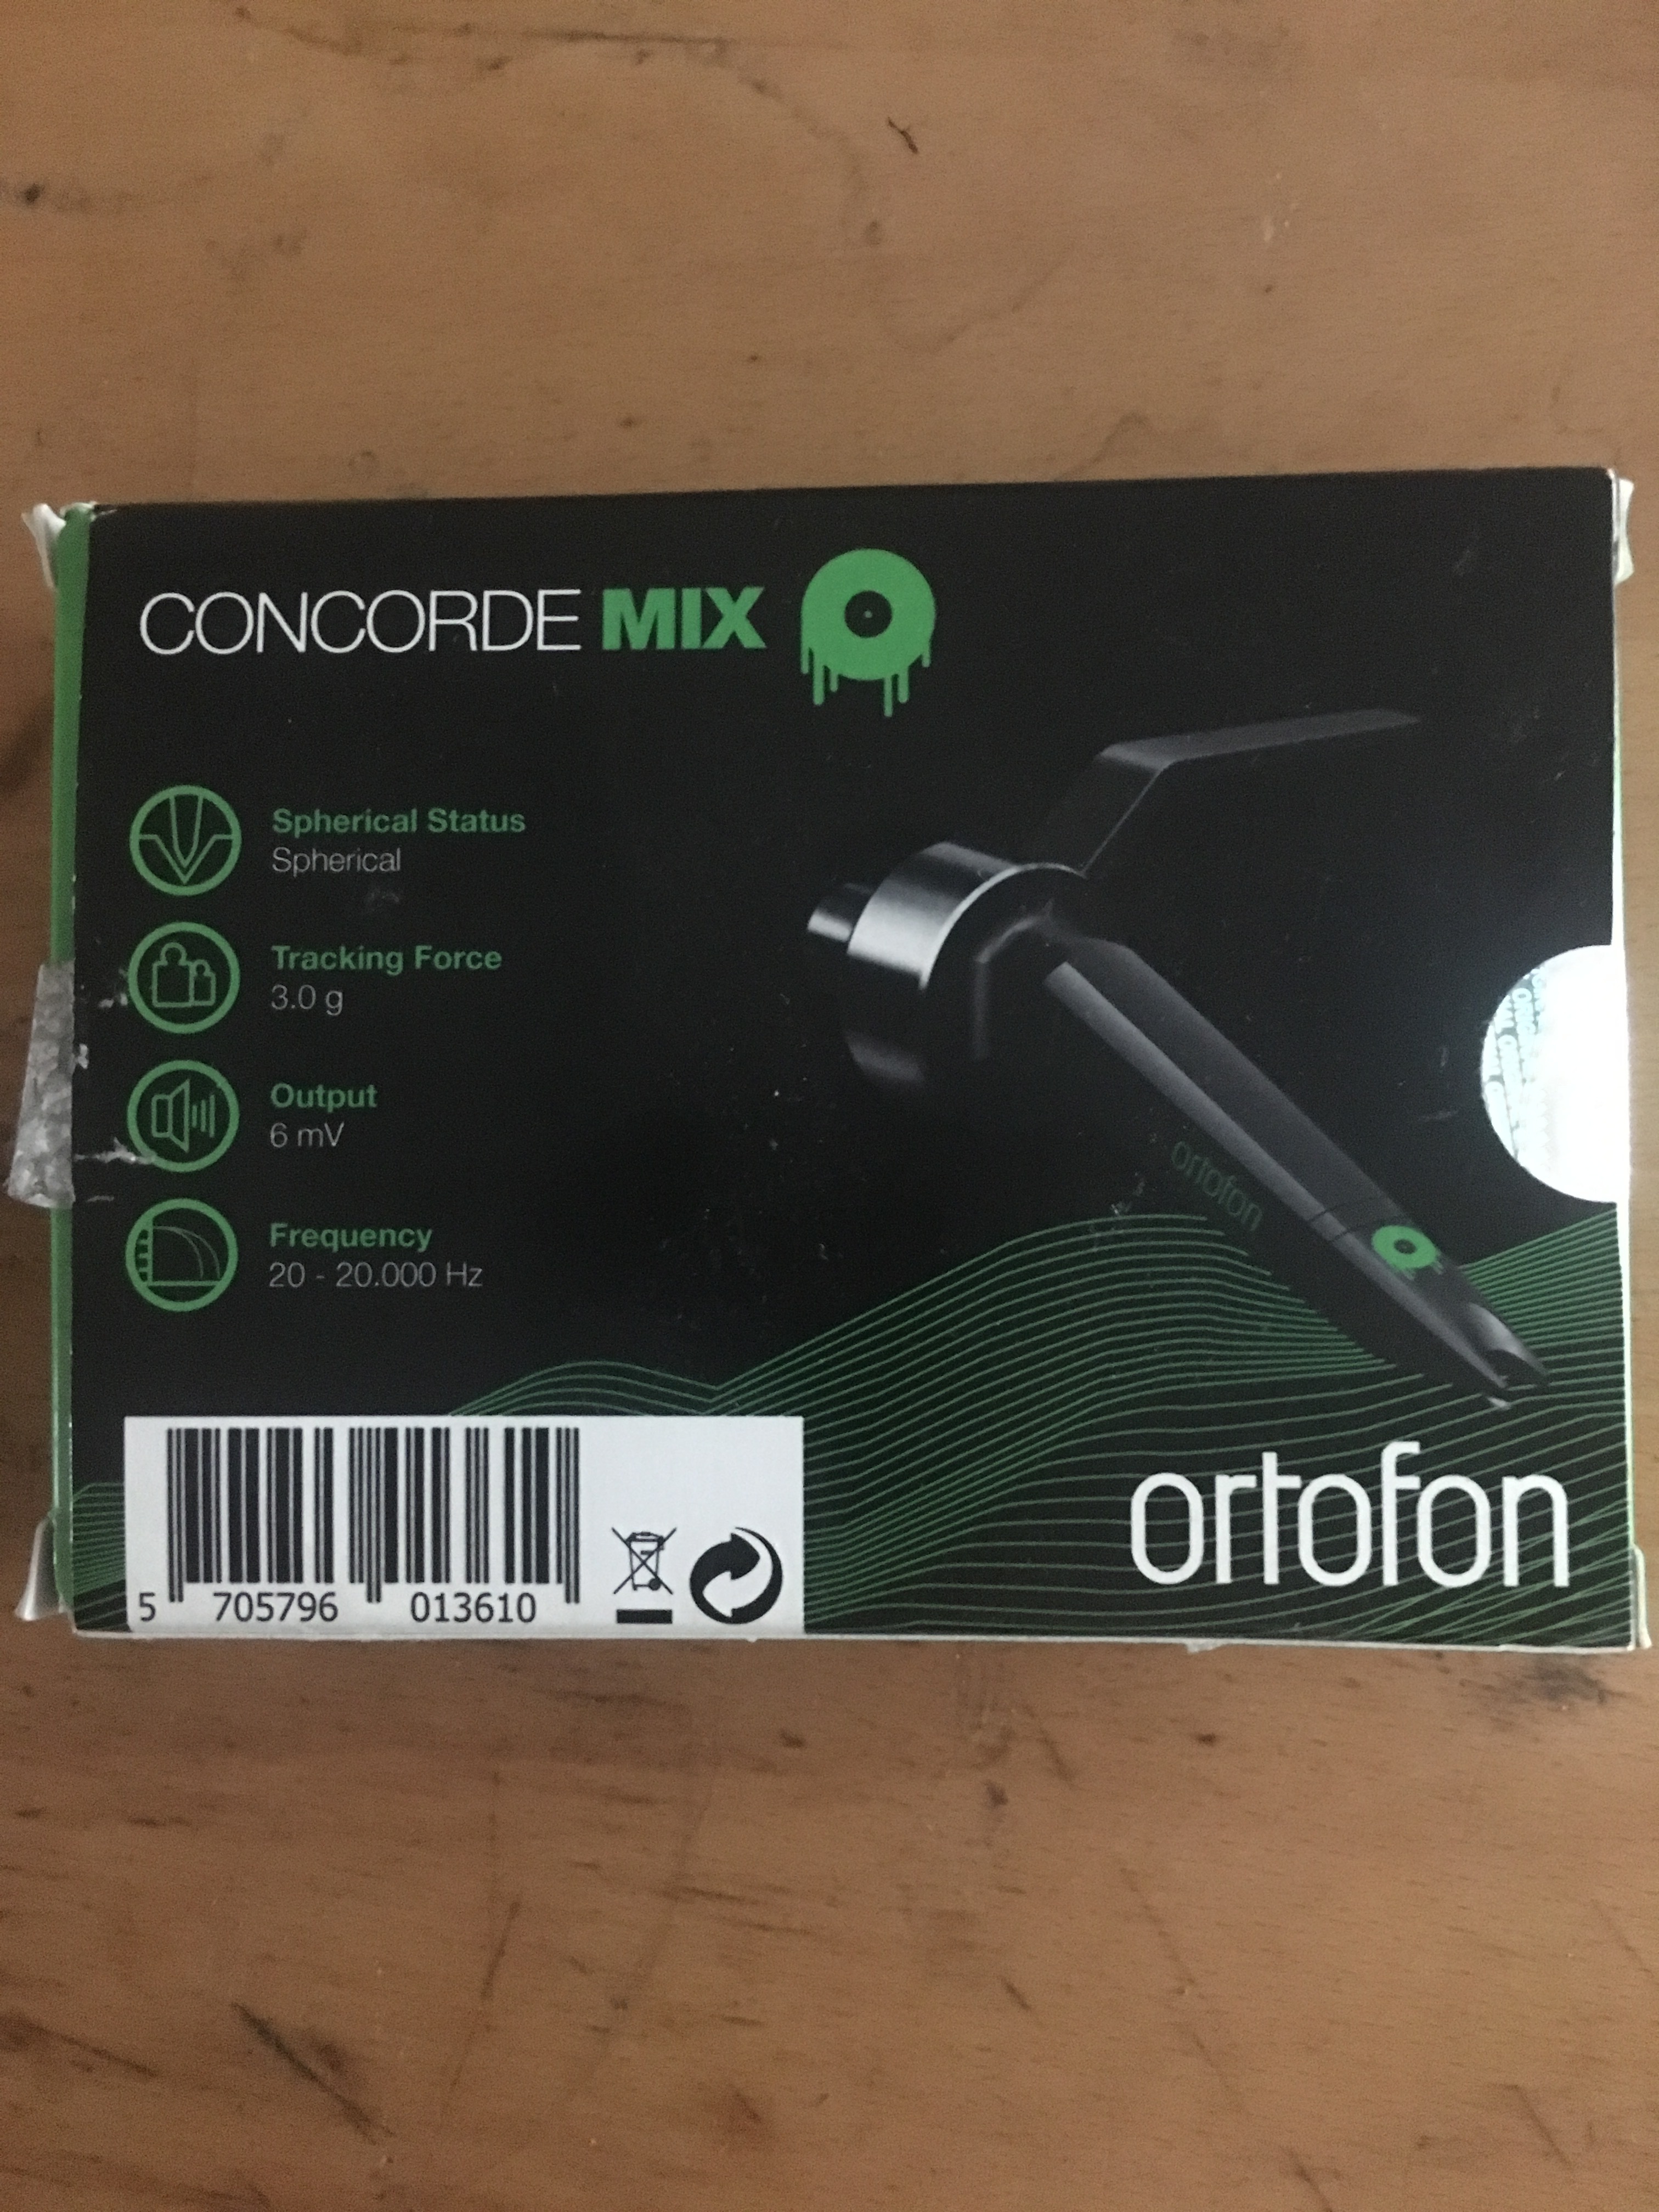 Ortofon concorde MKII mix - Audiofanzine